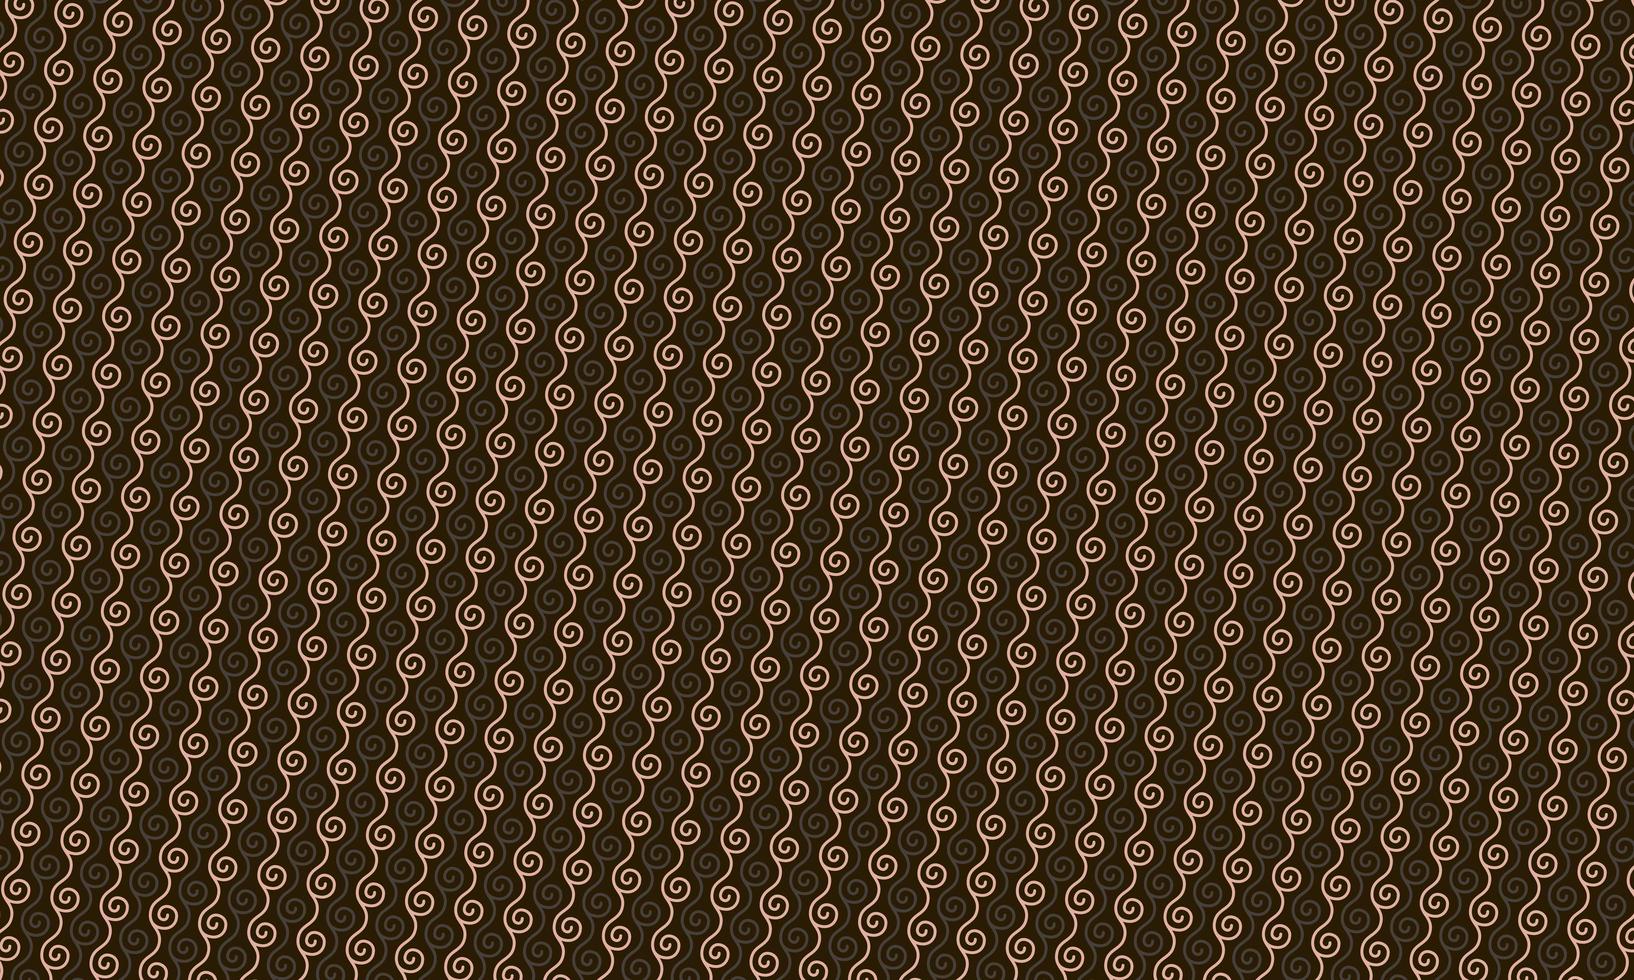 sömlös vävt linne textur bakgrund. fransk grå lin hampa fiber naturligt mönster. foto